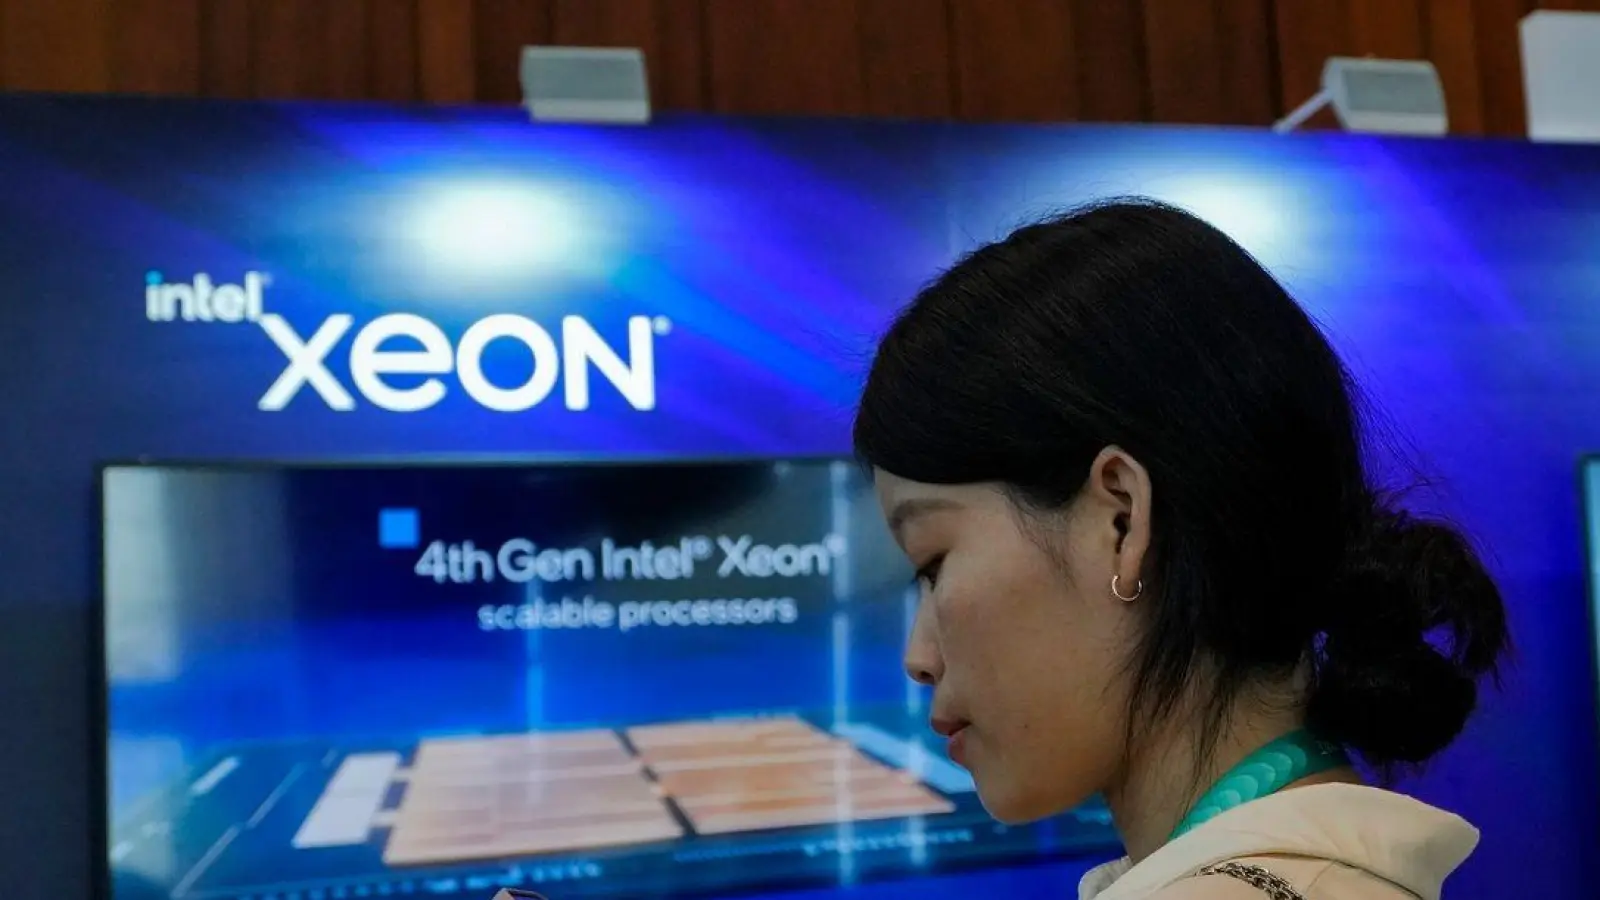 Ein Intel-Stand in Peking wirbt während einer Messe für Xeon-Chips. (Foto: Andy Wong/AP/dpa)